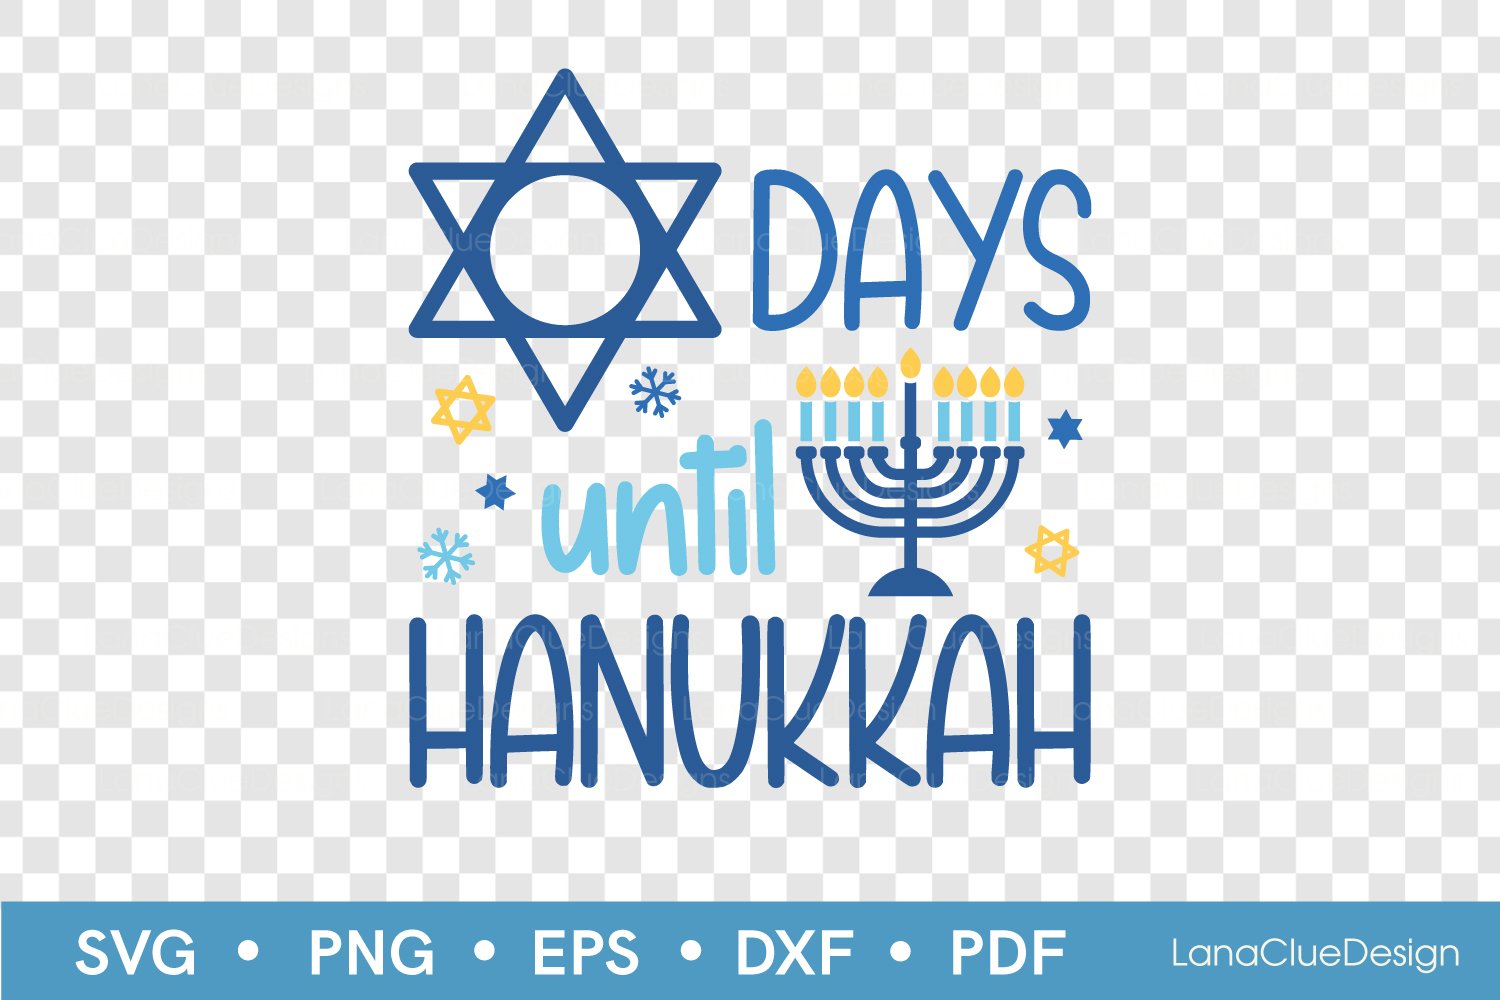 Hanukkah star print.